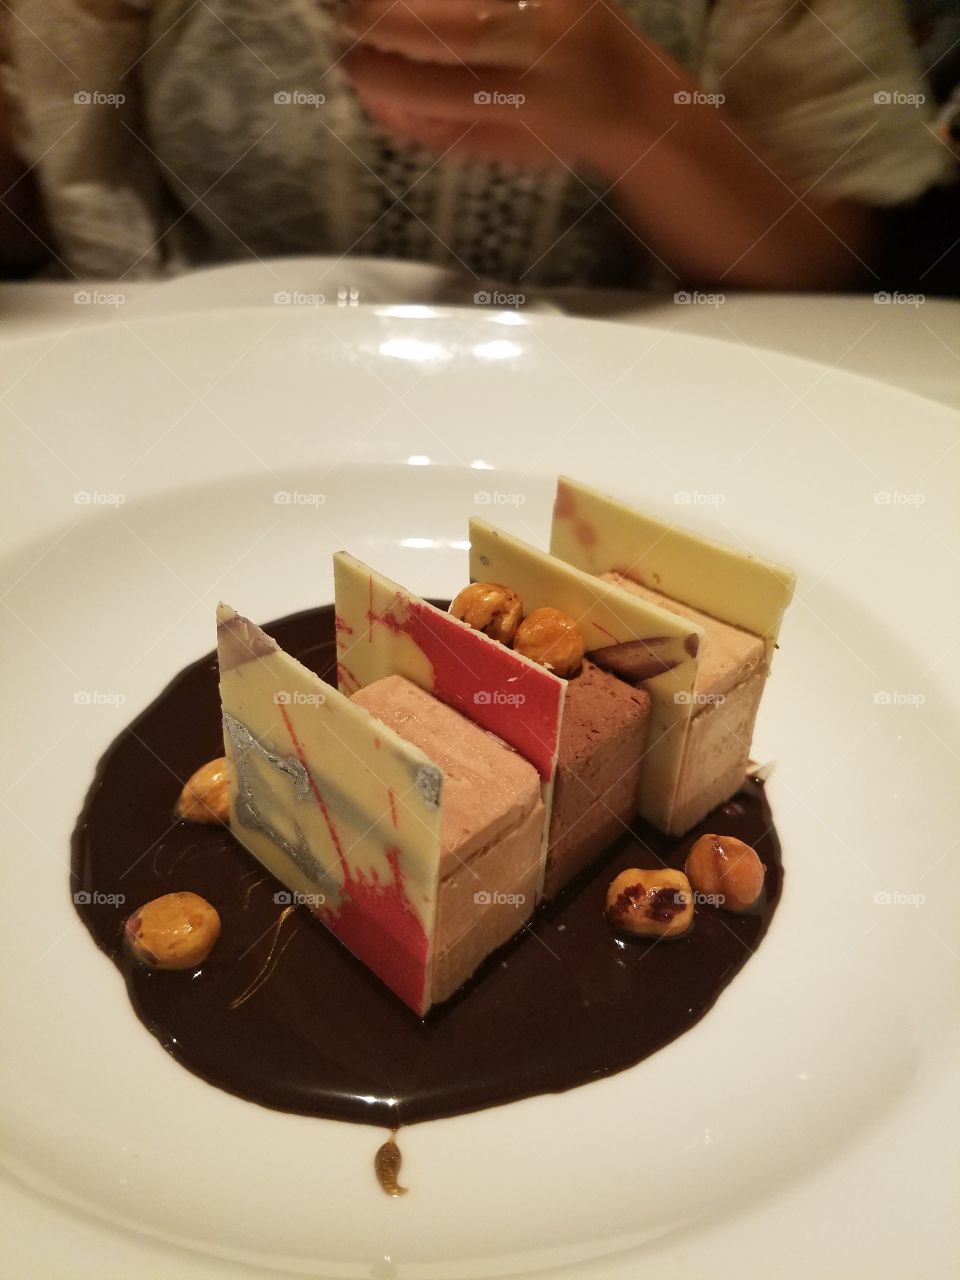 Rioja dessert